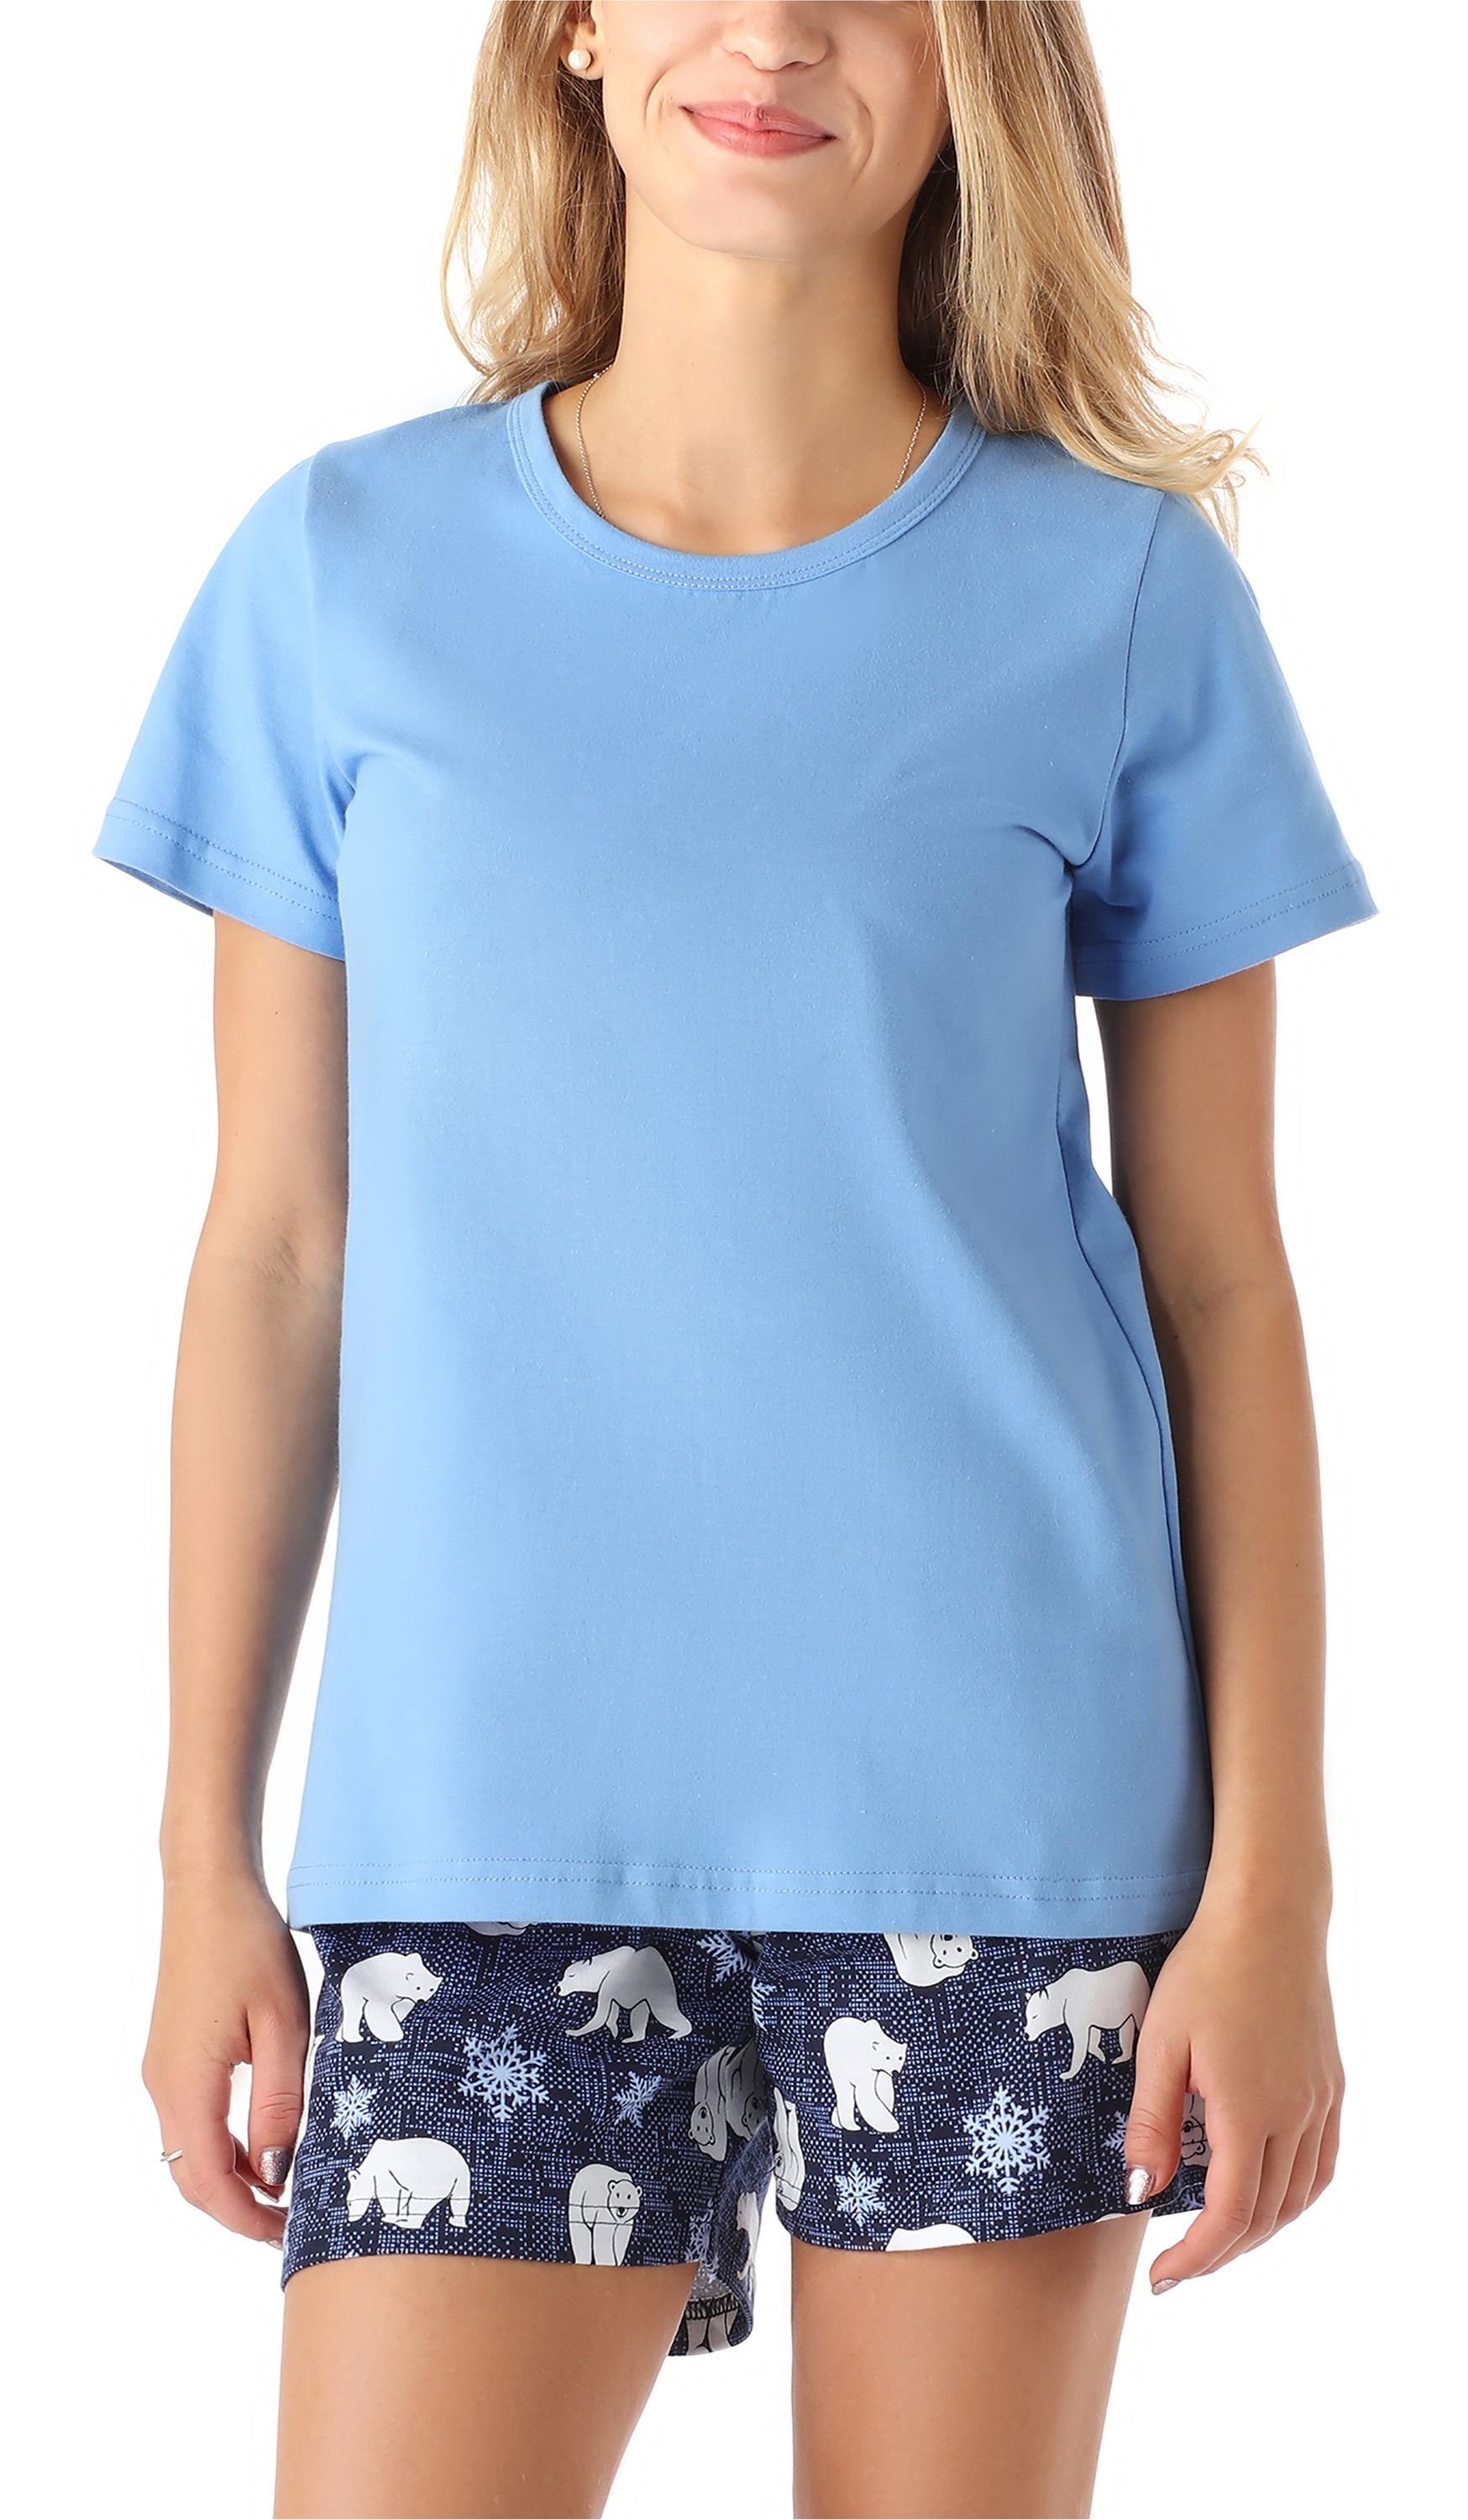 Merry Style Schlafanzug Mädchen Schlafanzüge Kurz aus Baumwolle Pyjama Set MS10-265 Blau Bär